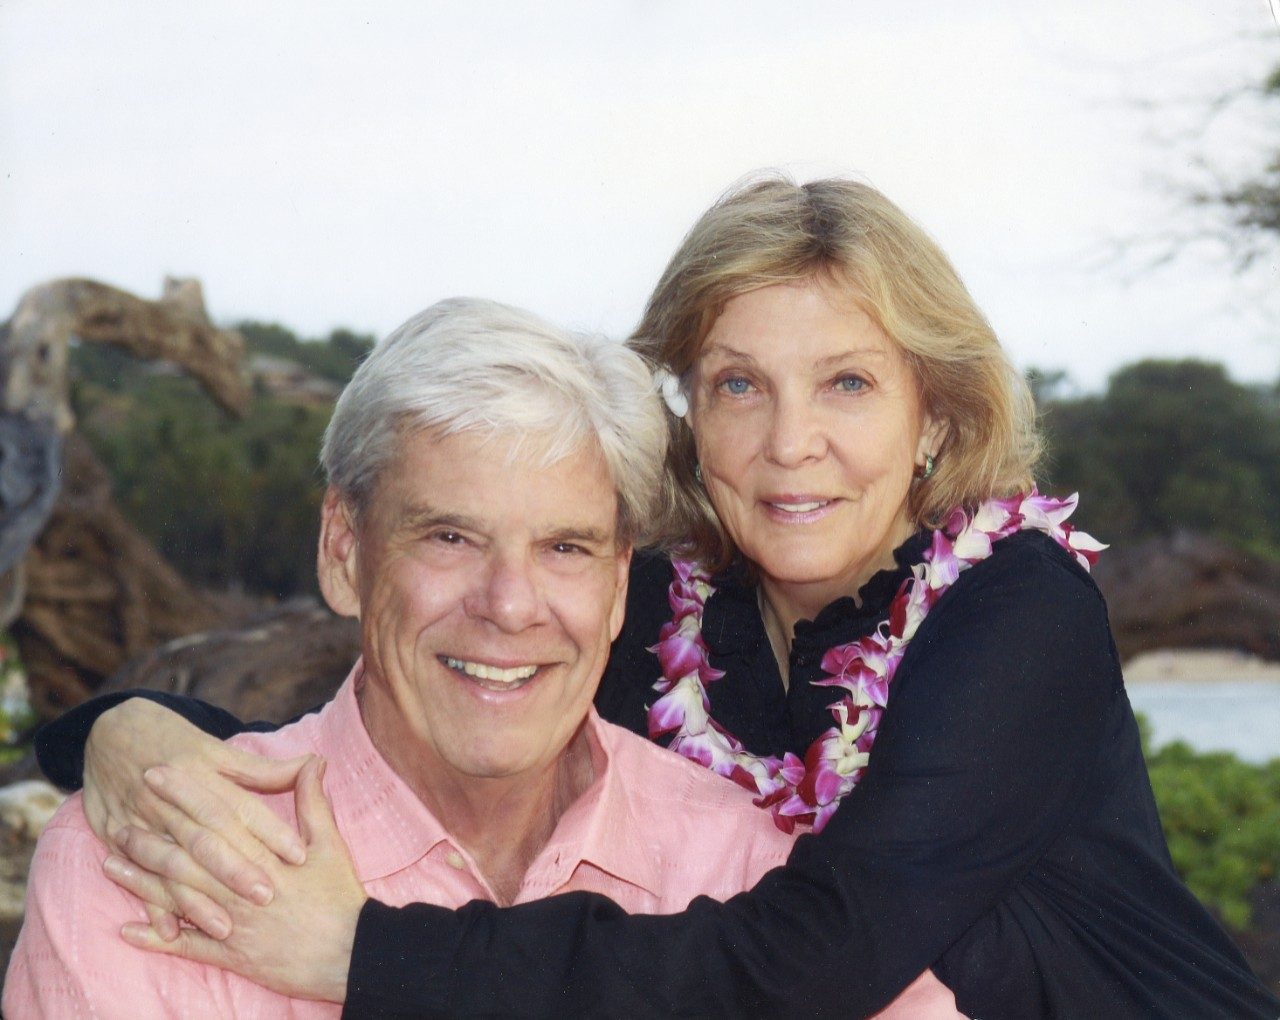 Wayne Gibbens是MD安德森癌症中心访客委员会的成员，他回顾了他妻子的黑色素瘤幸存者和他们的家人对MD安德森癌症中心终结癌症使命的长期承诺。